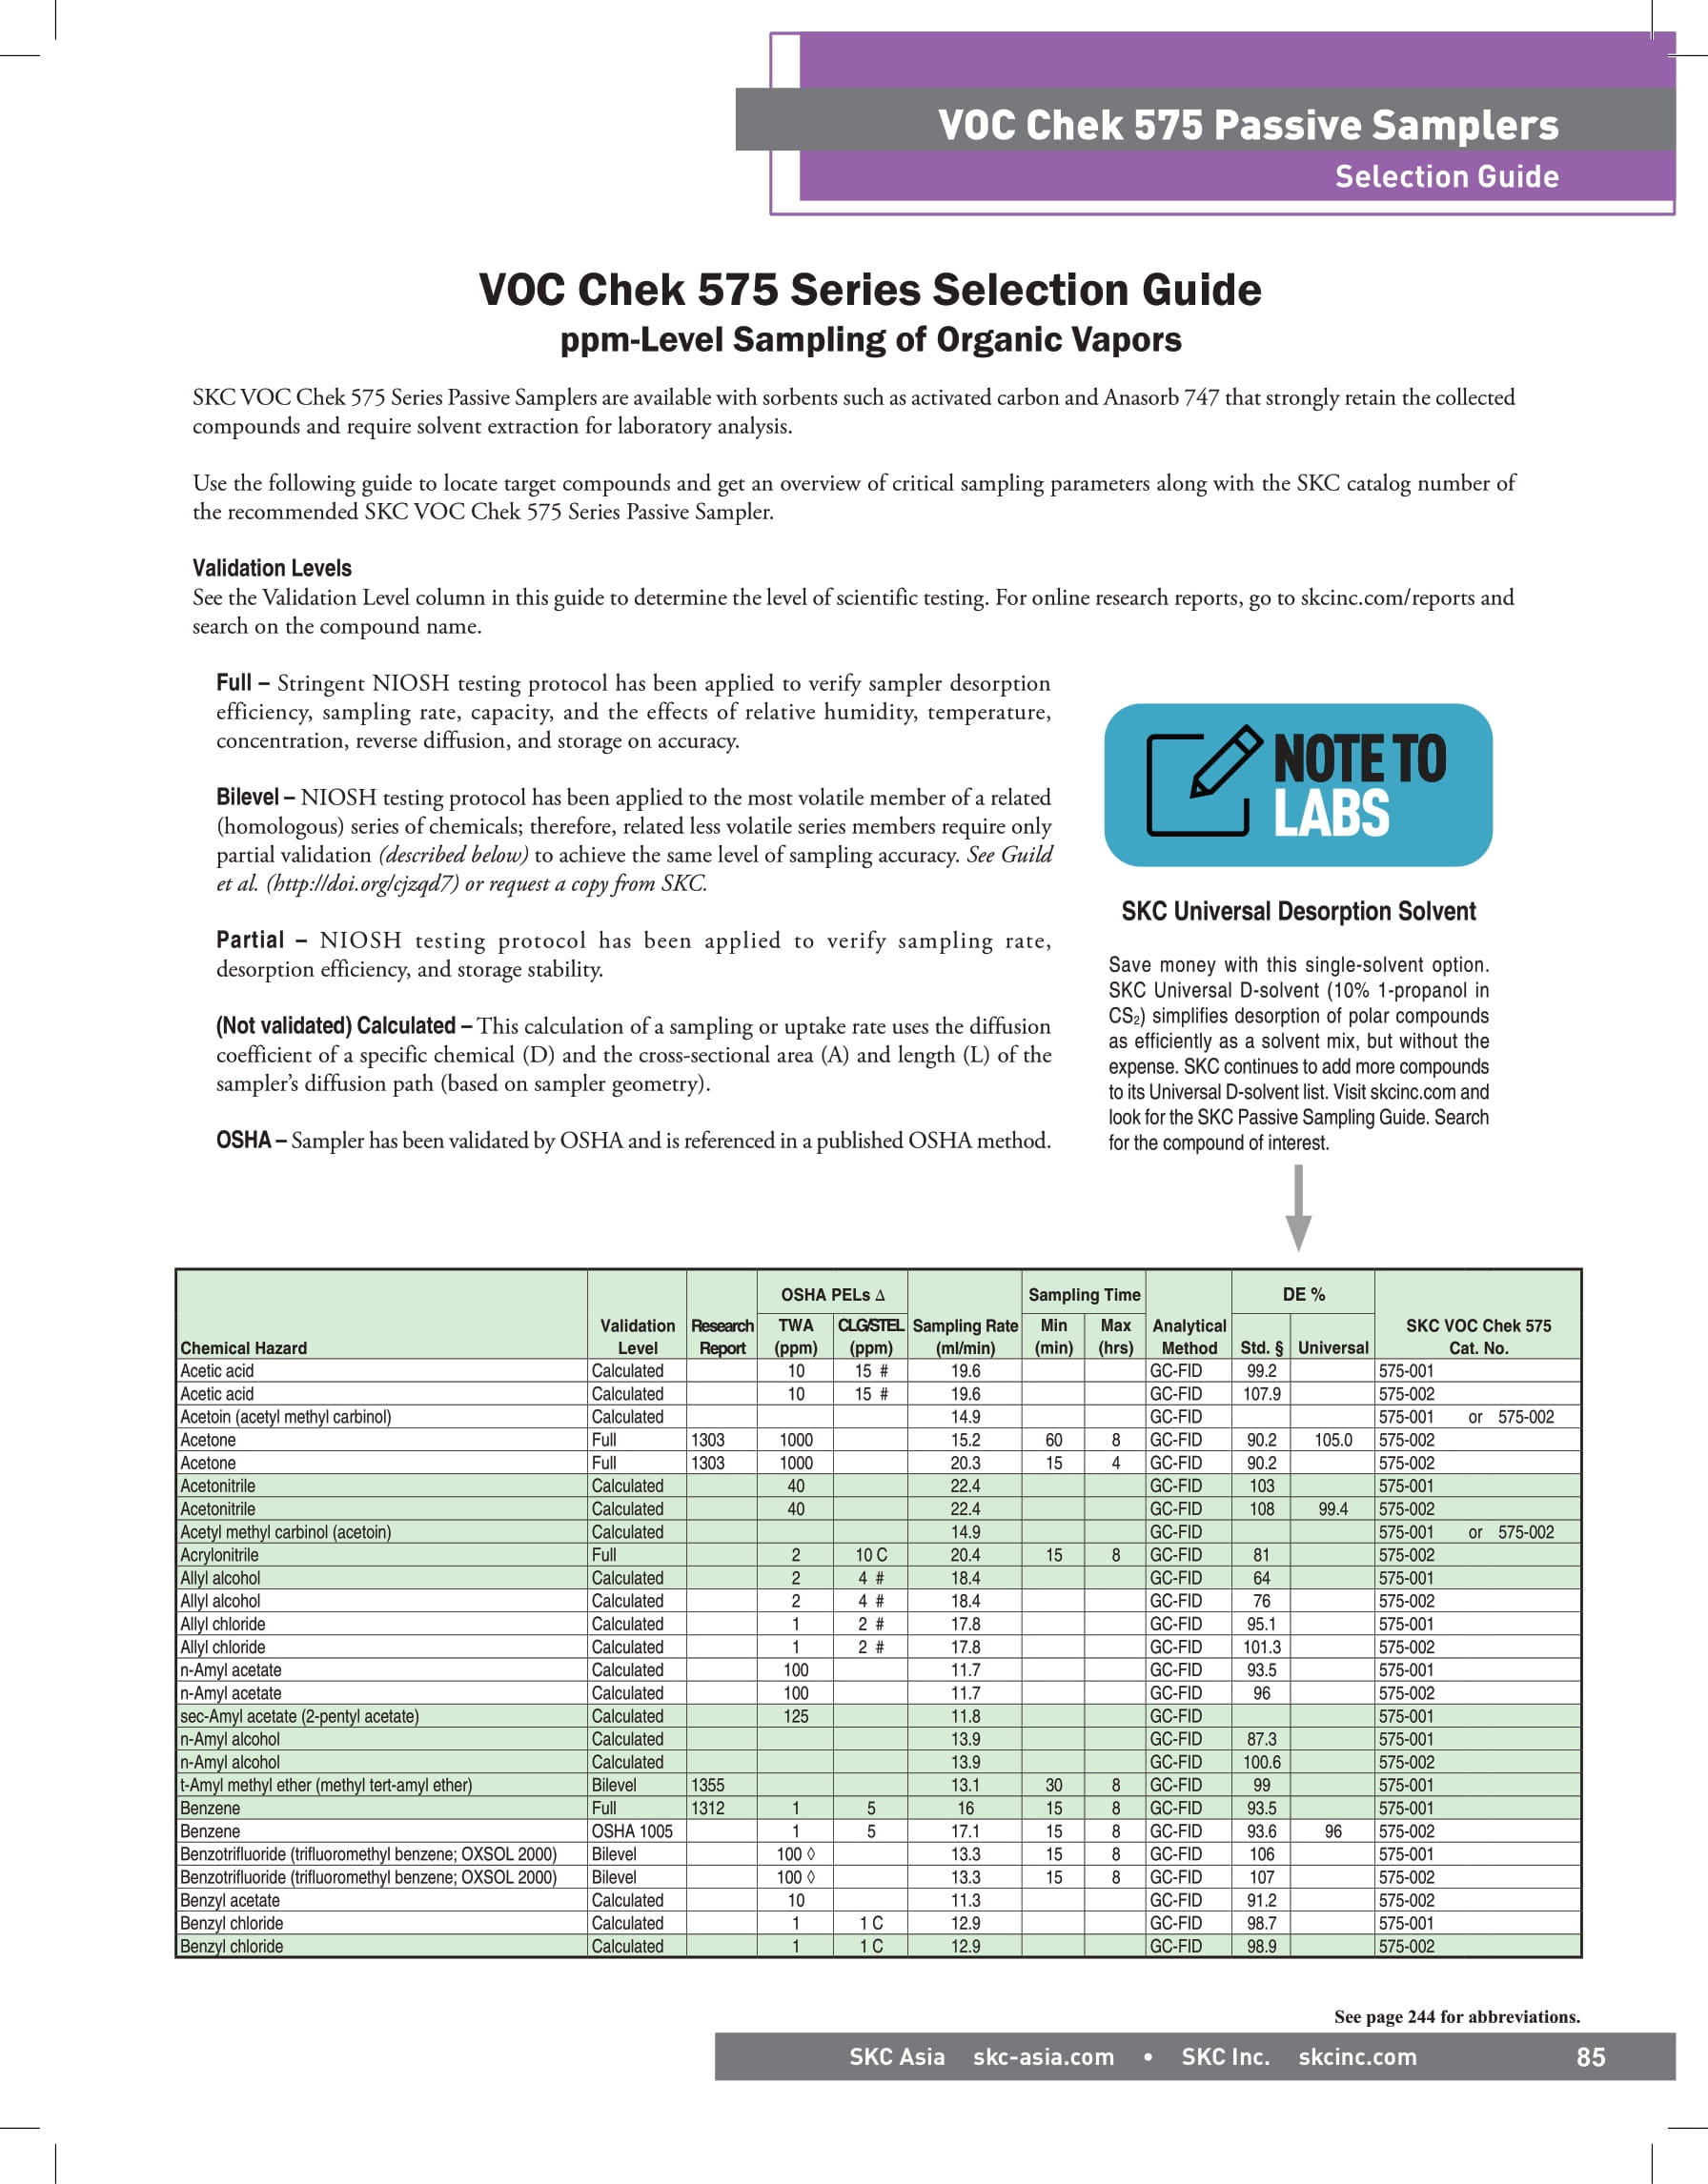 VOC 575 Selection Guide